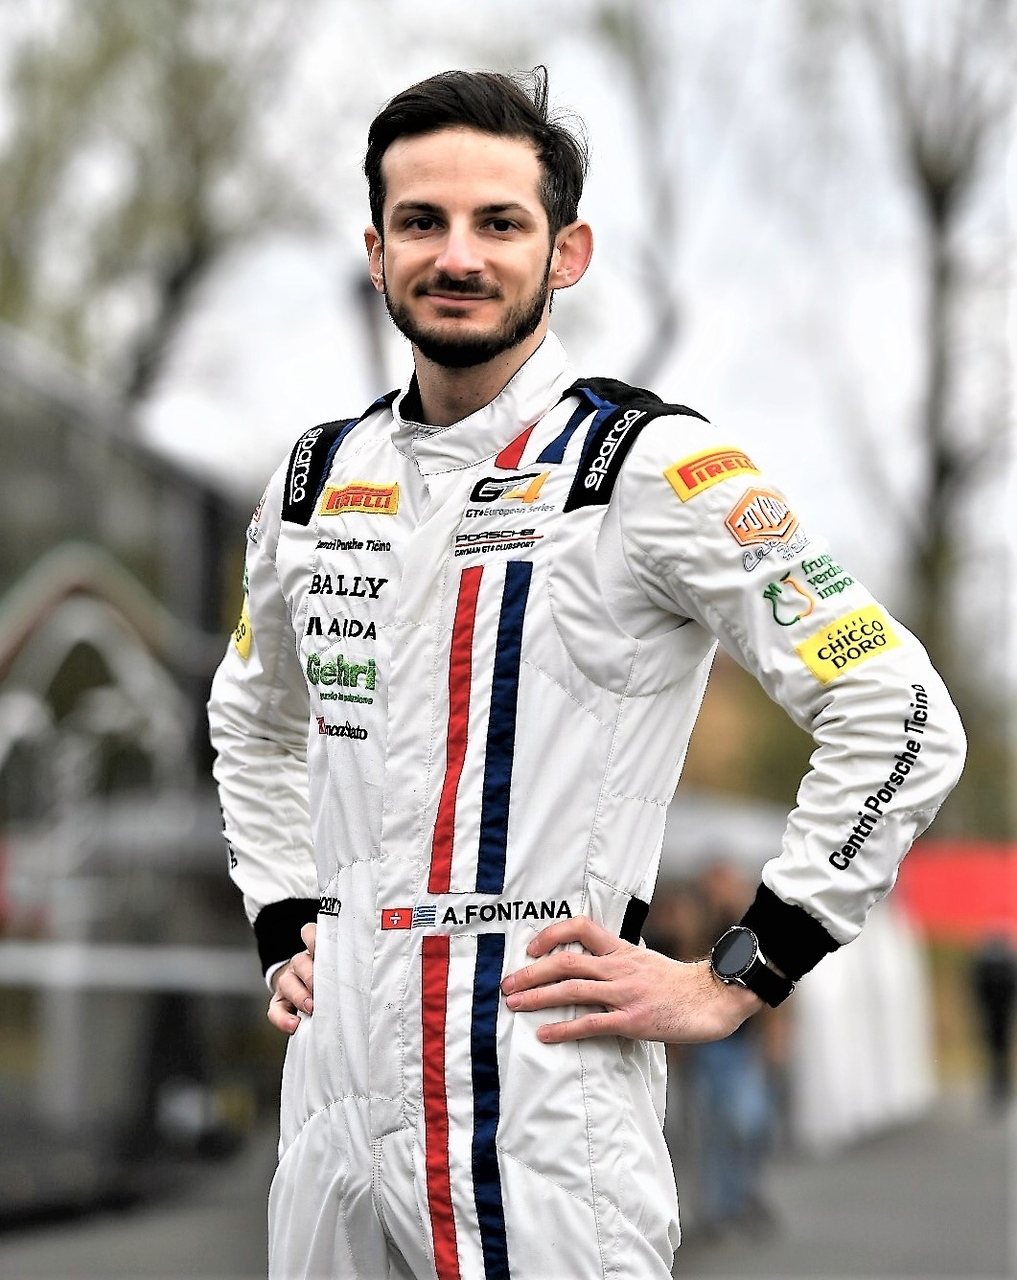 Alex Fontana: Der Tessiner, geboren am 5. August 1992 in Lugano, kümmert sich für das italienischsprachige Schweizer Radio und Fernsehen um die technische Kommentierung des Formel-1-Grand-Prix